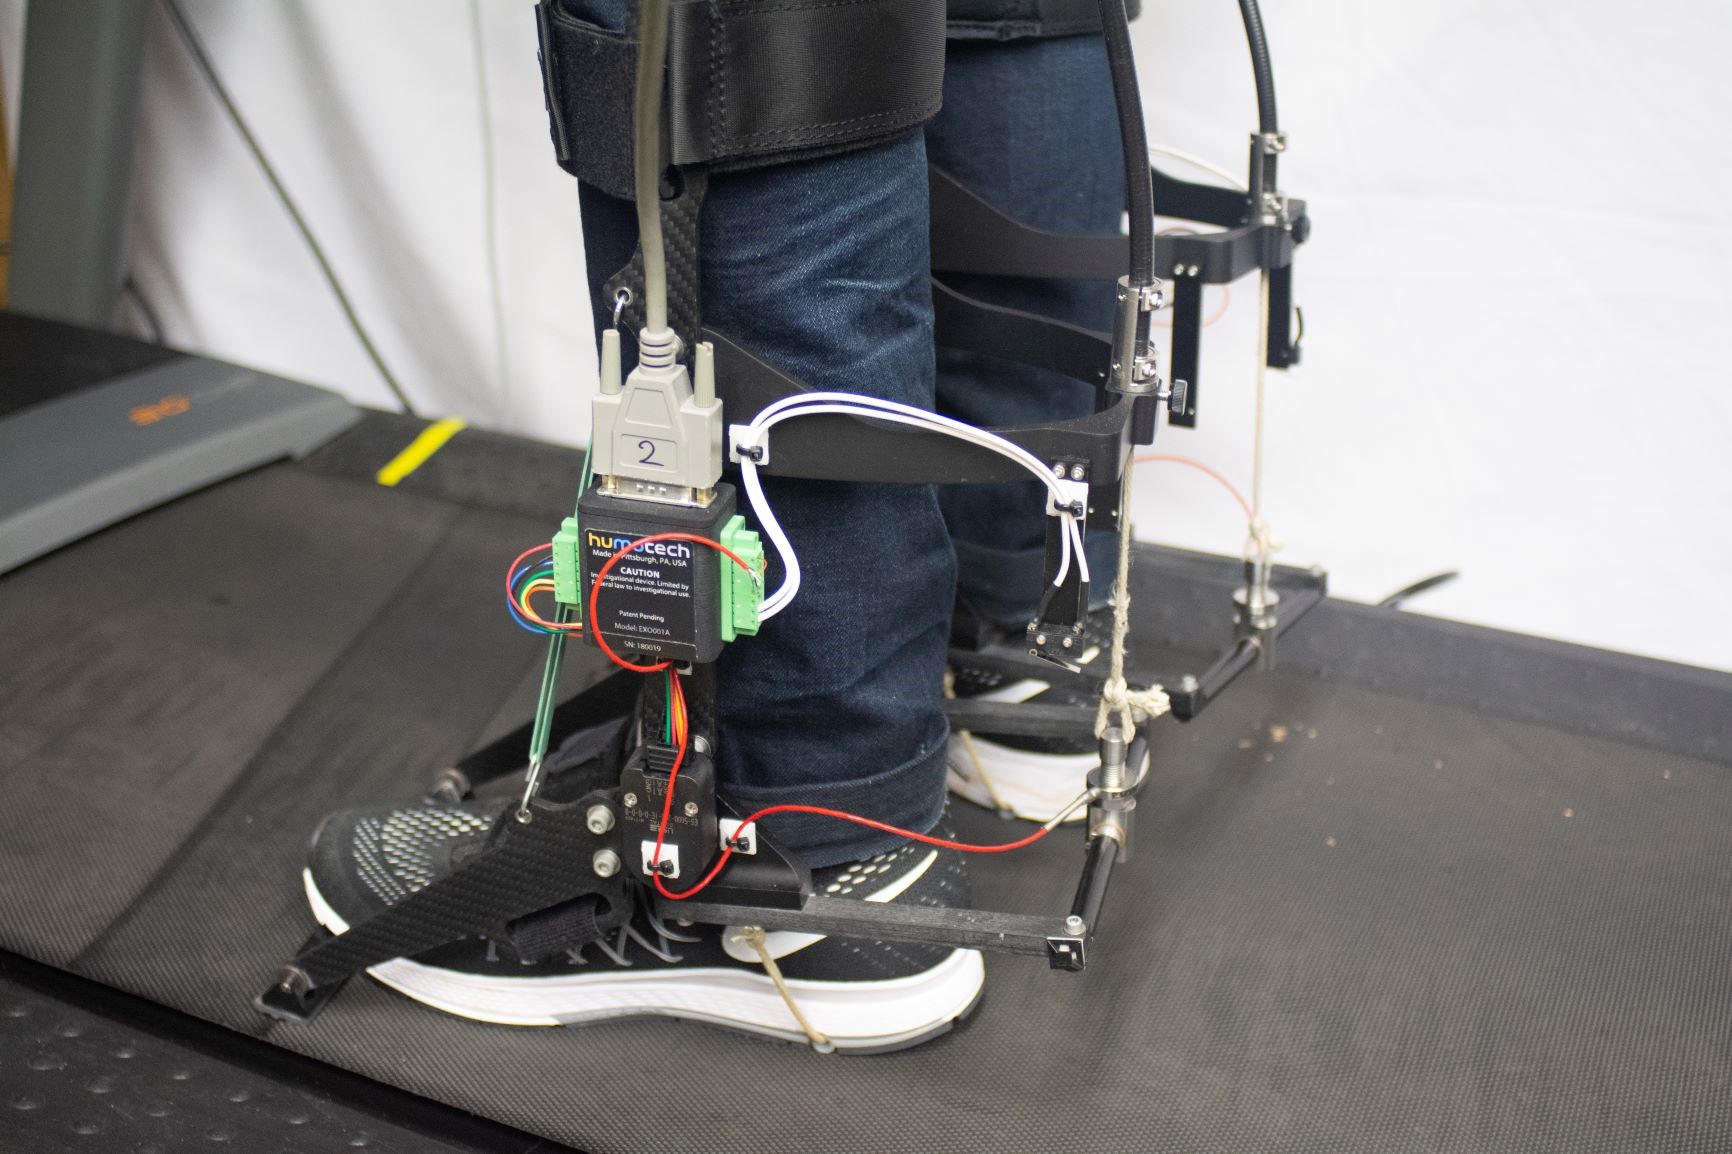 robotic prosthetic